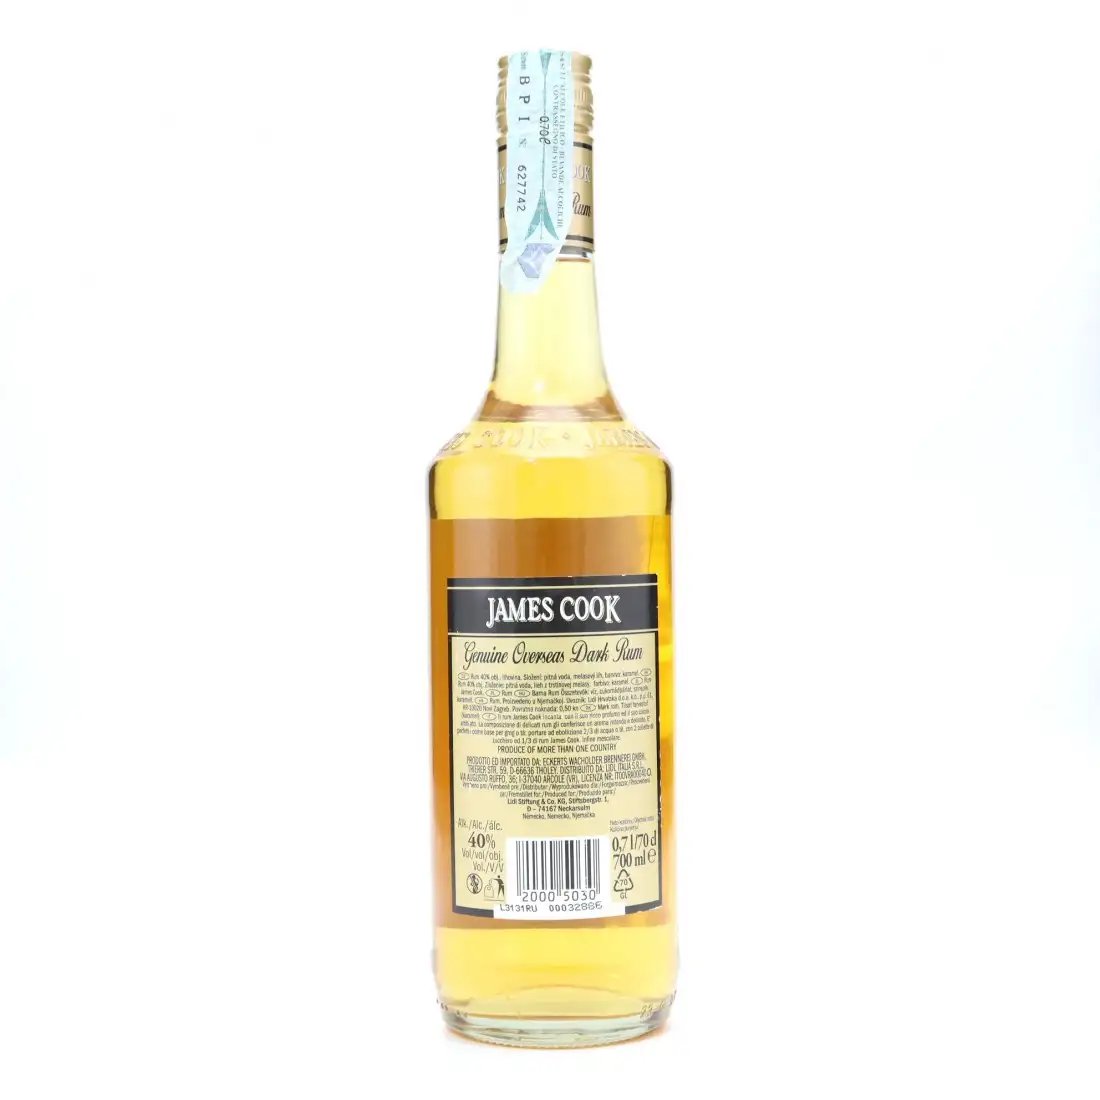 James Cook Genuine Overseas Dark Rum 40% | RX10284 | RumX